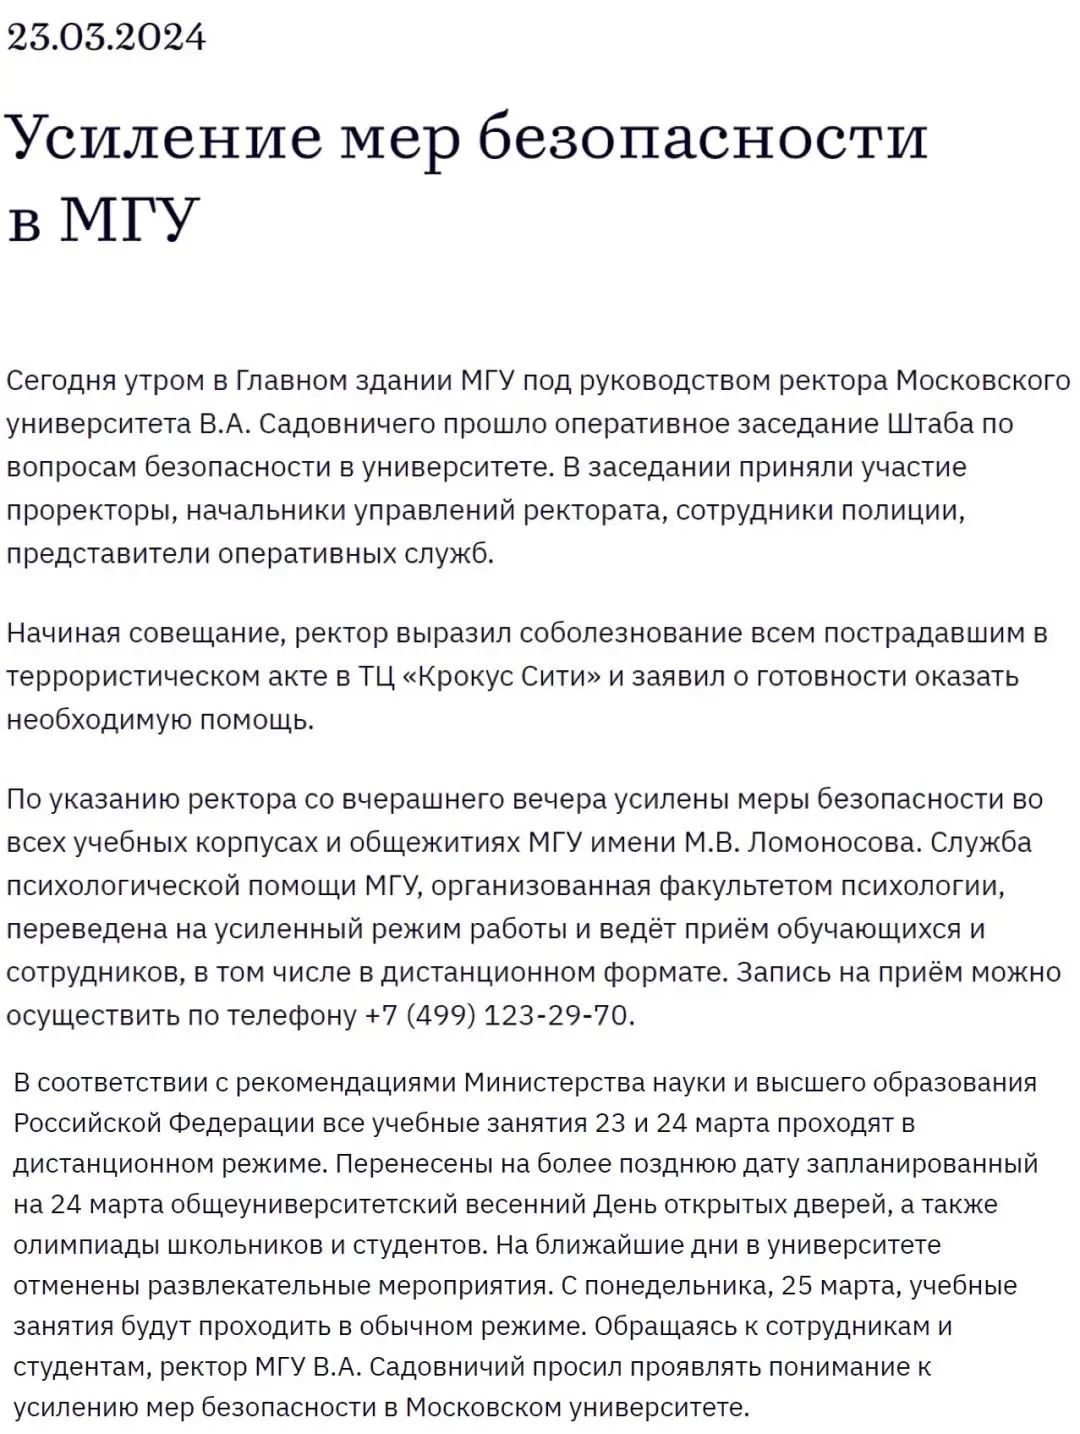 致俄已确认全体莫斯科学子以及工作人员平安，莫斯科地区已提高安保等级，部分院校转为线上授课